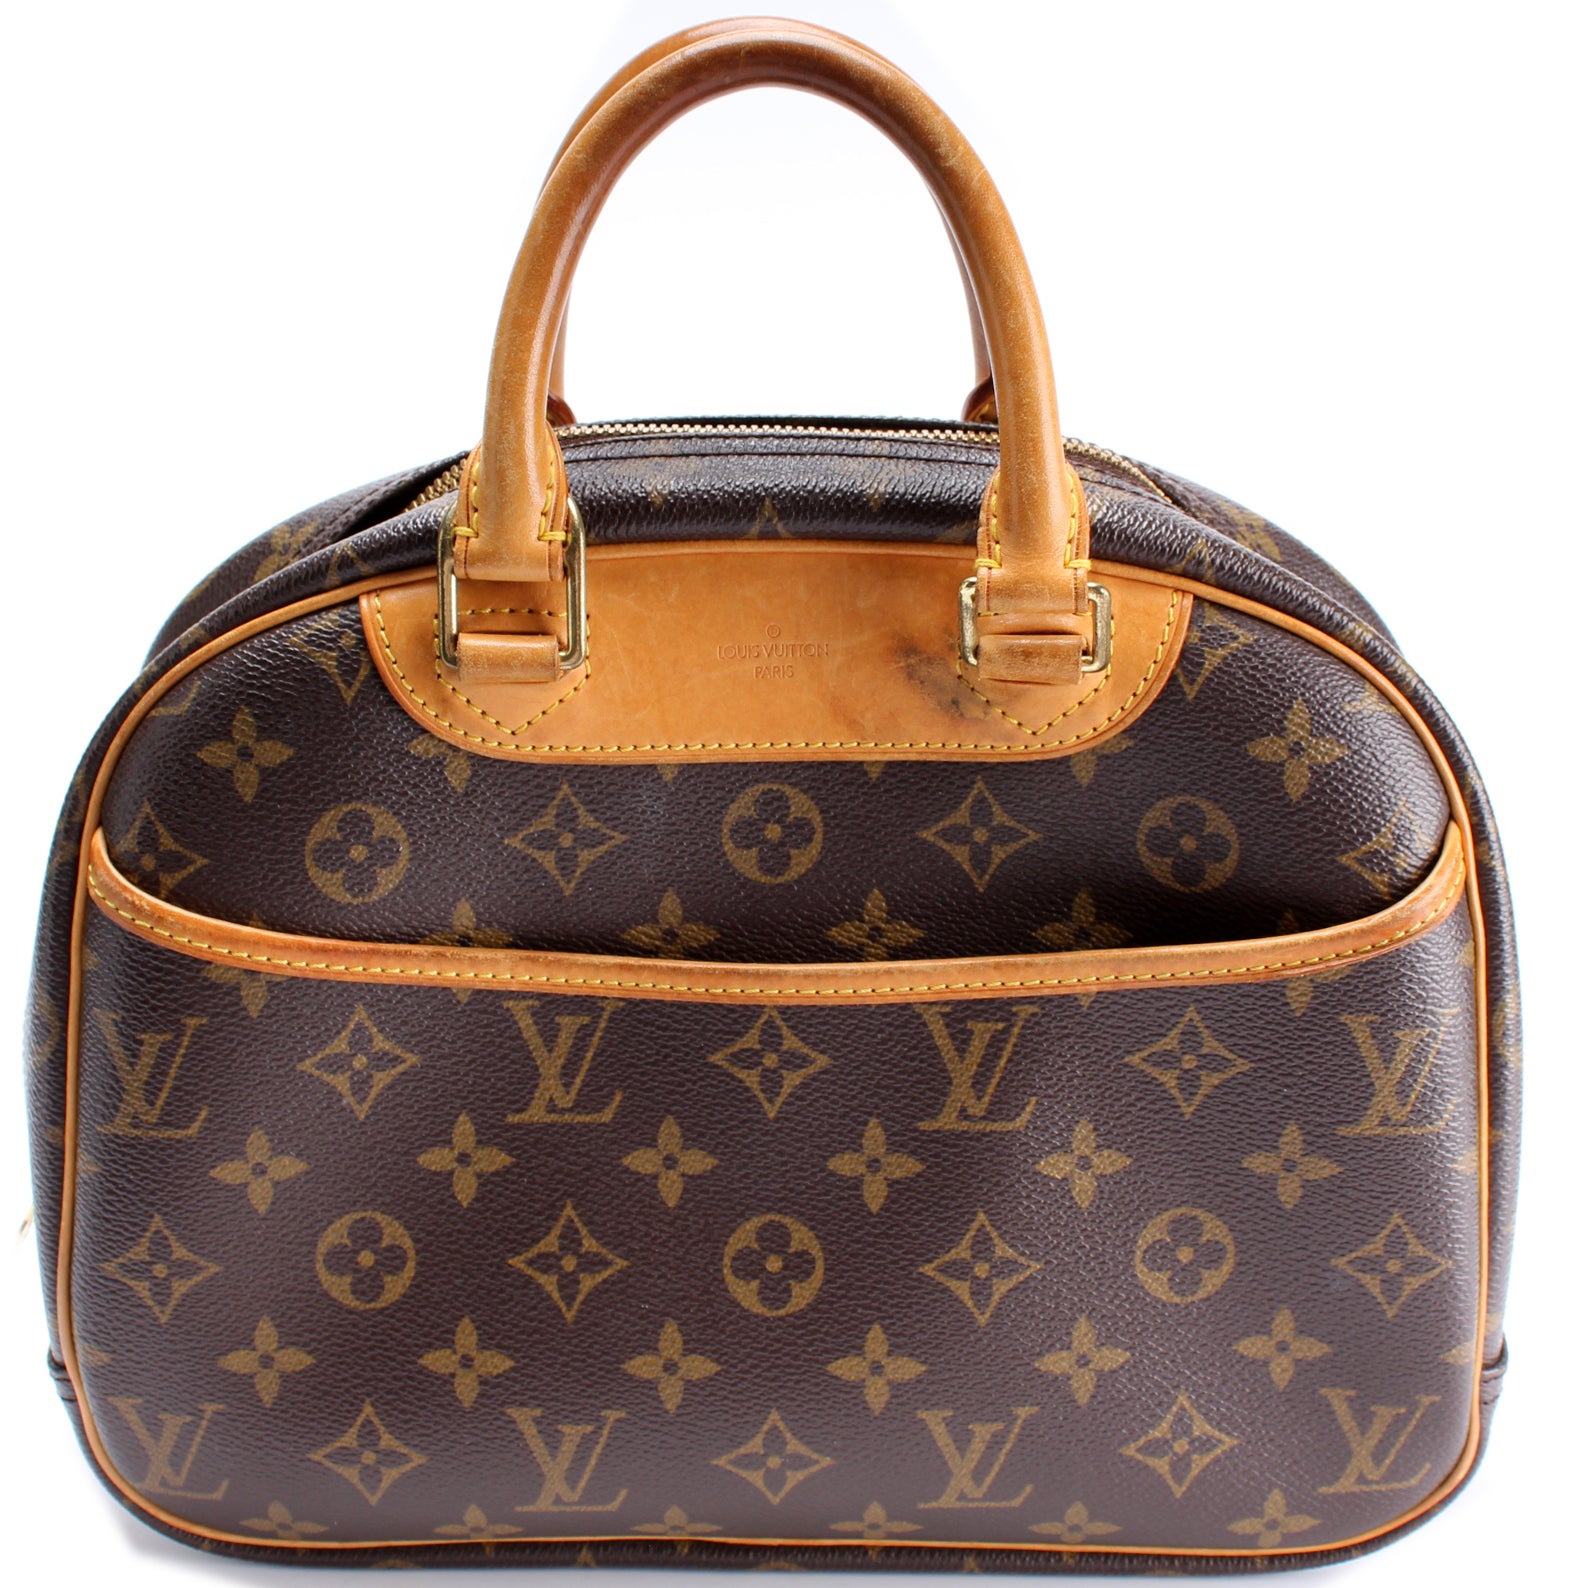 Louis Vuitton Monogram Trouville Handbag This Is An Authentic